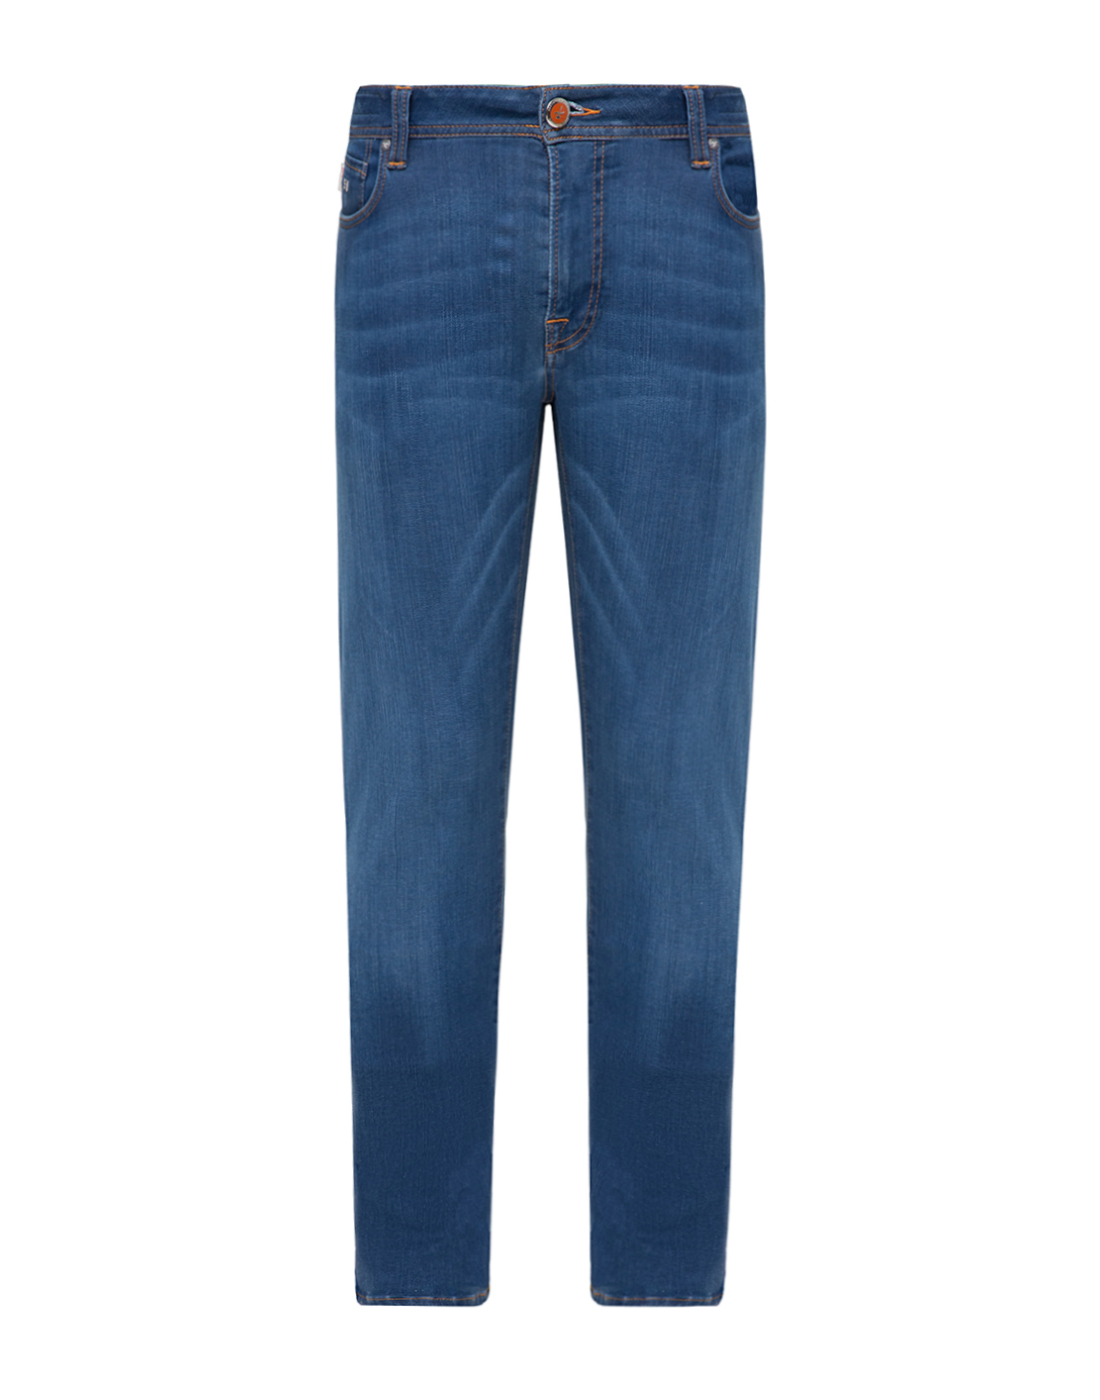 Чоловічі сині джинси Leonardo slim-1